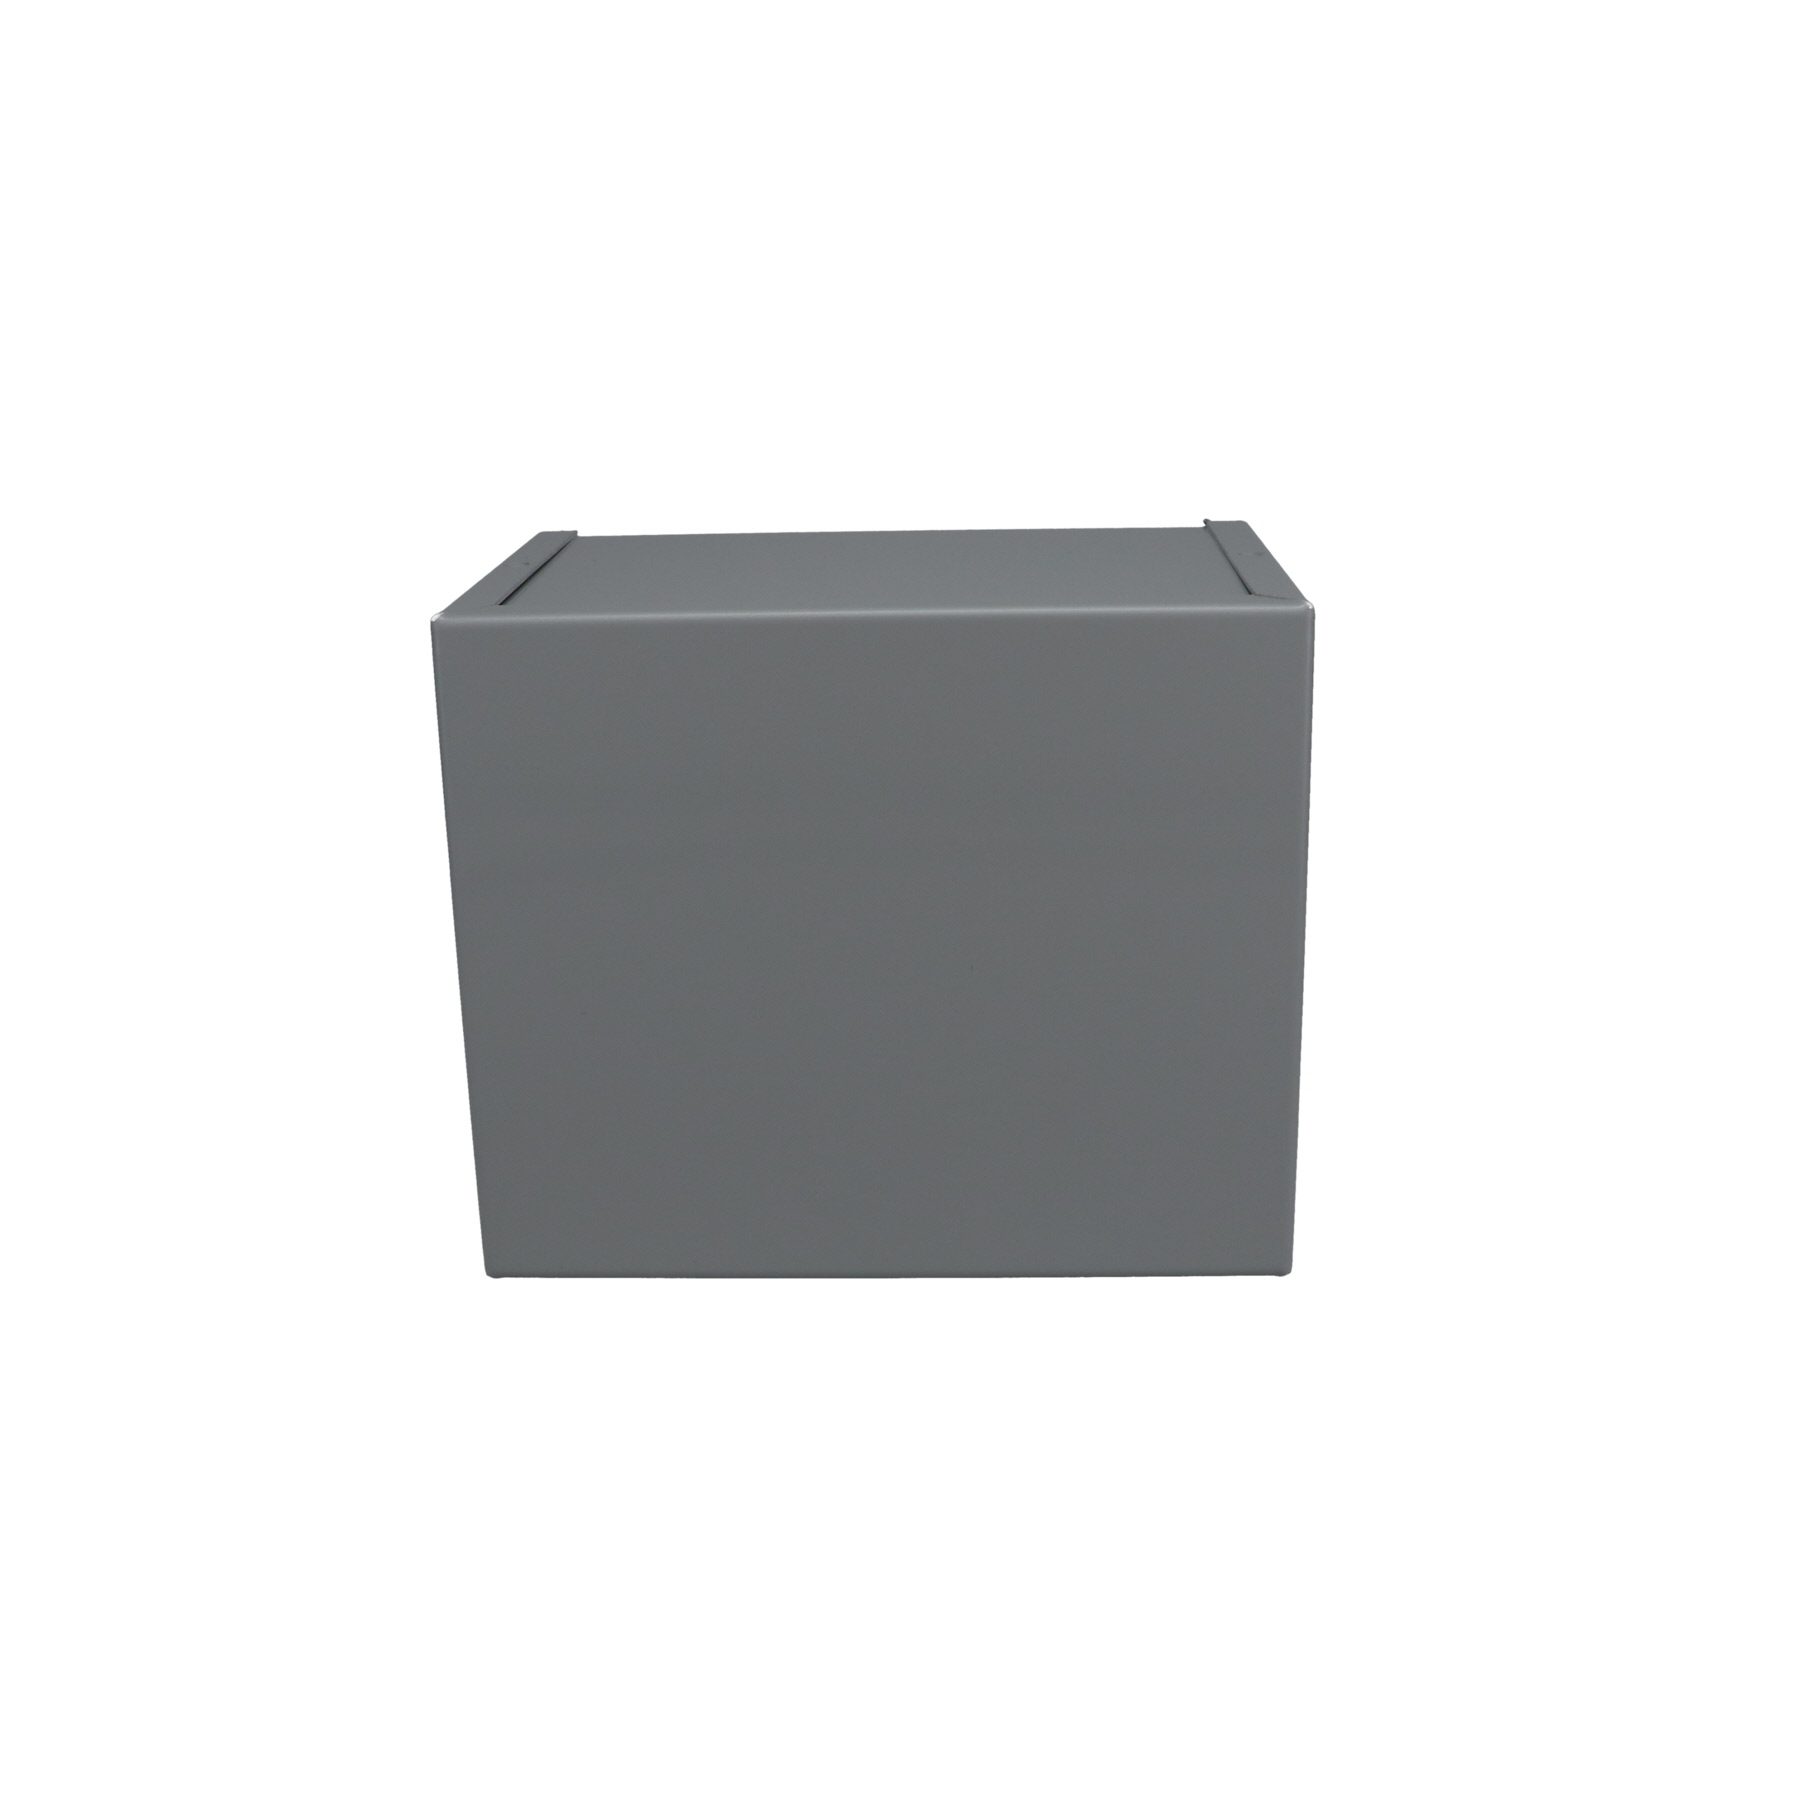 Minibox Caja Metálica Pequeña Gris CU-2103-B - Bud Industries